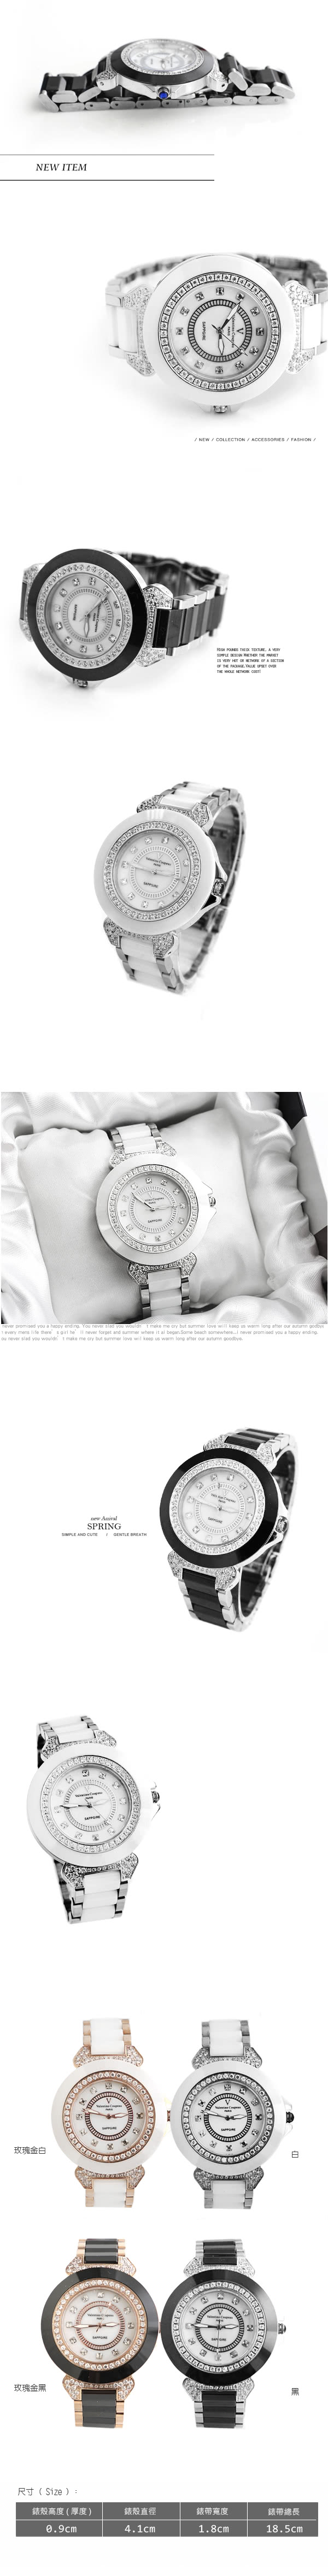 【Valentino范倫鐵諾】名媛必備珍珠貝面爪鑲方晶鋯石精密陶瓷手錶腕錶(玖飾時尚NE744)